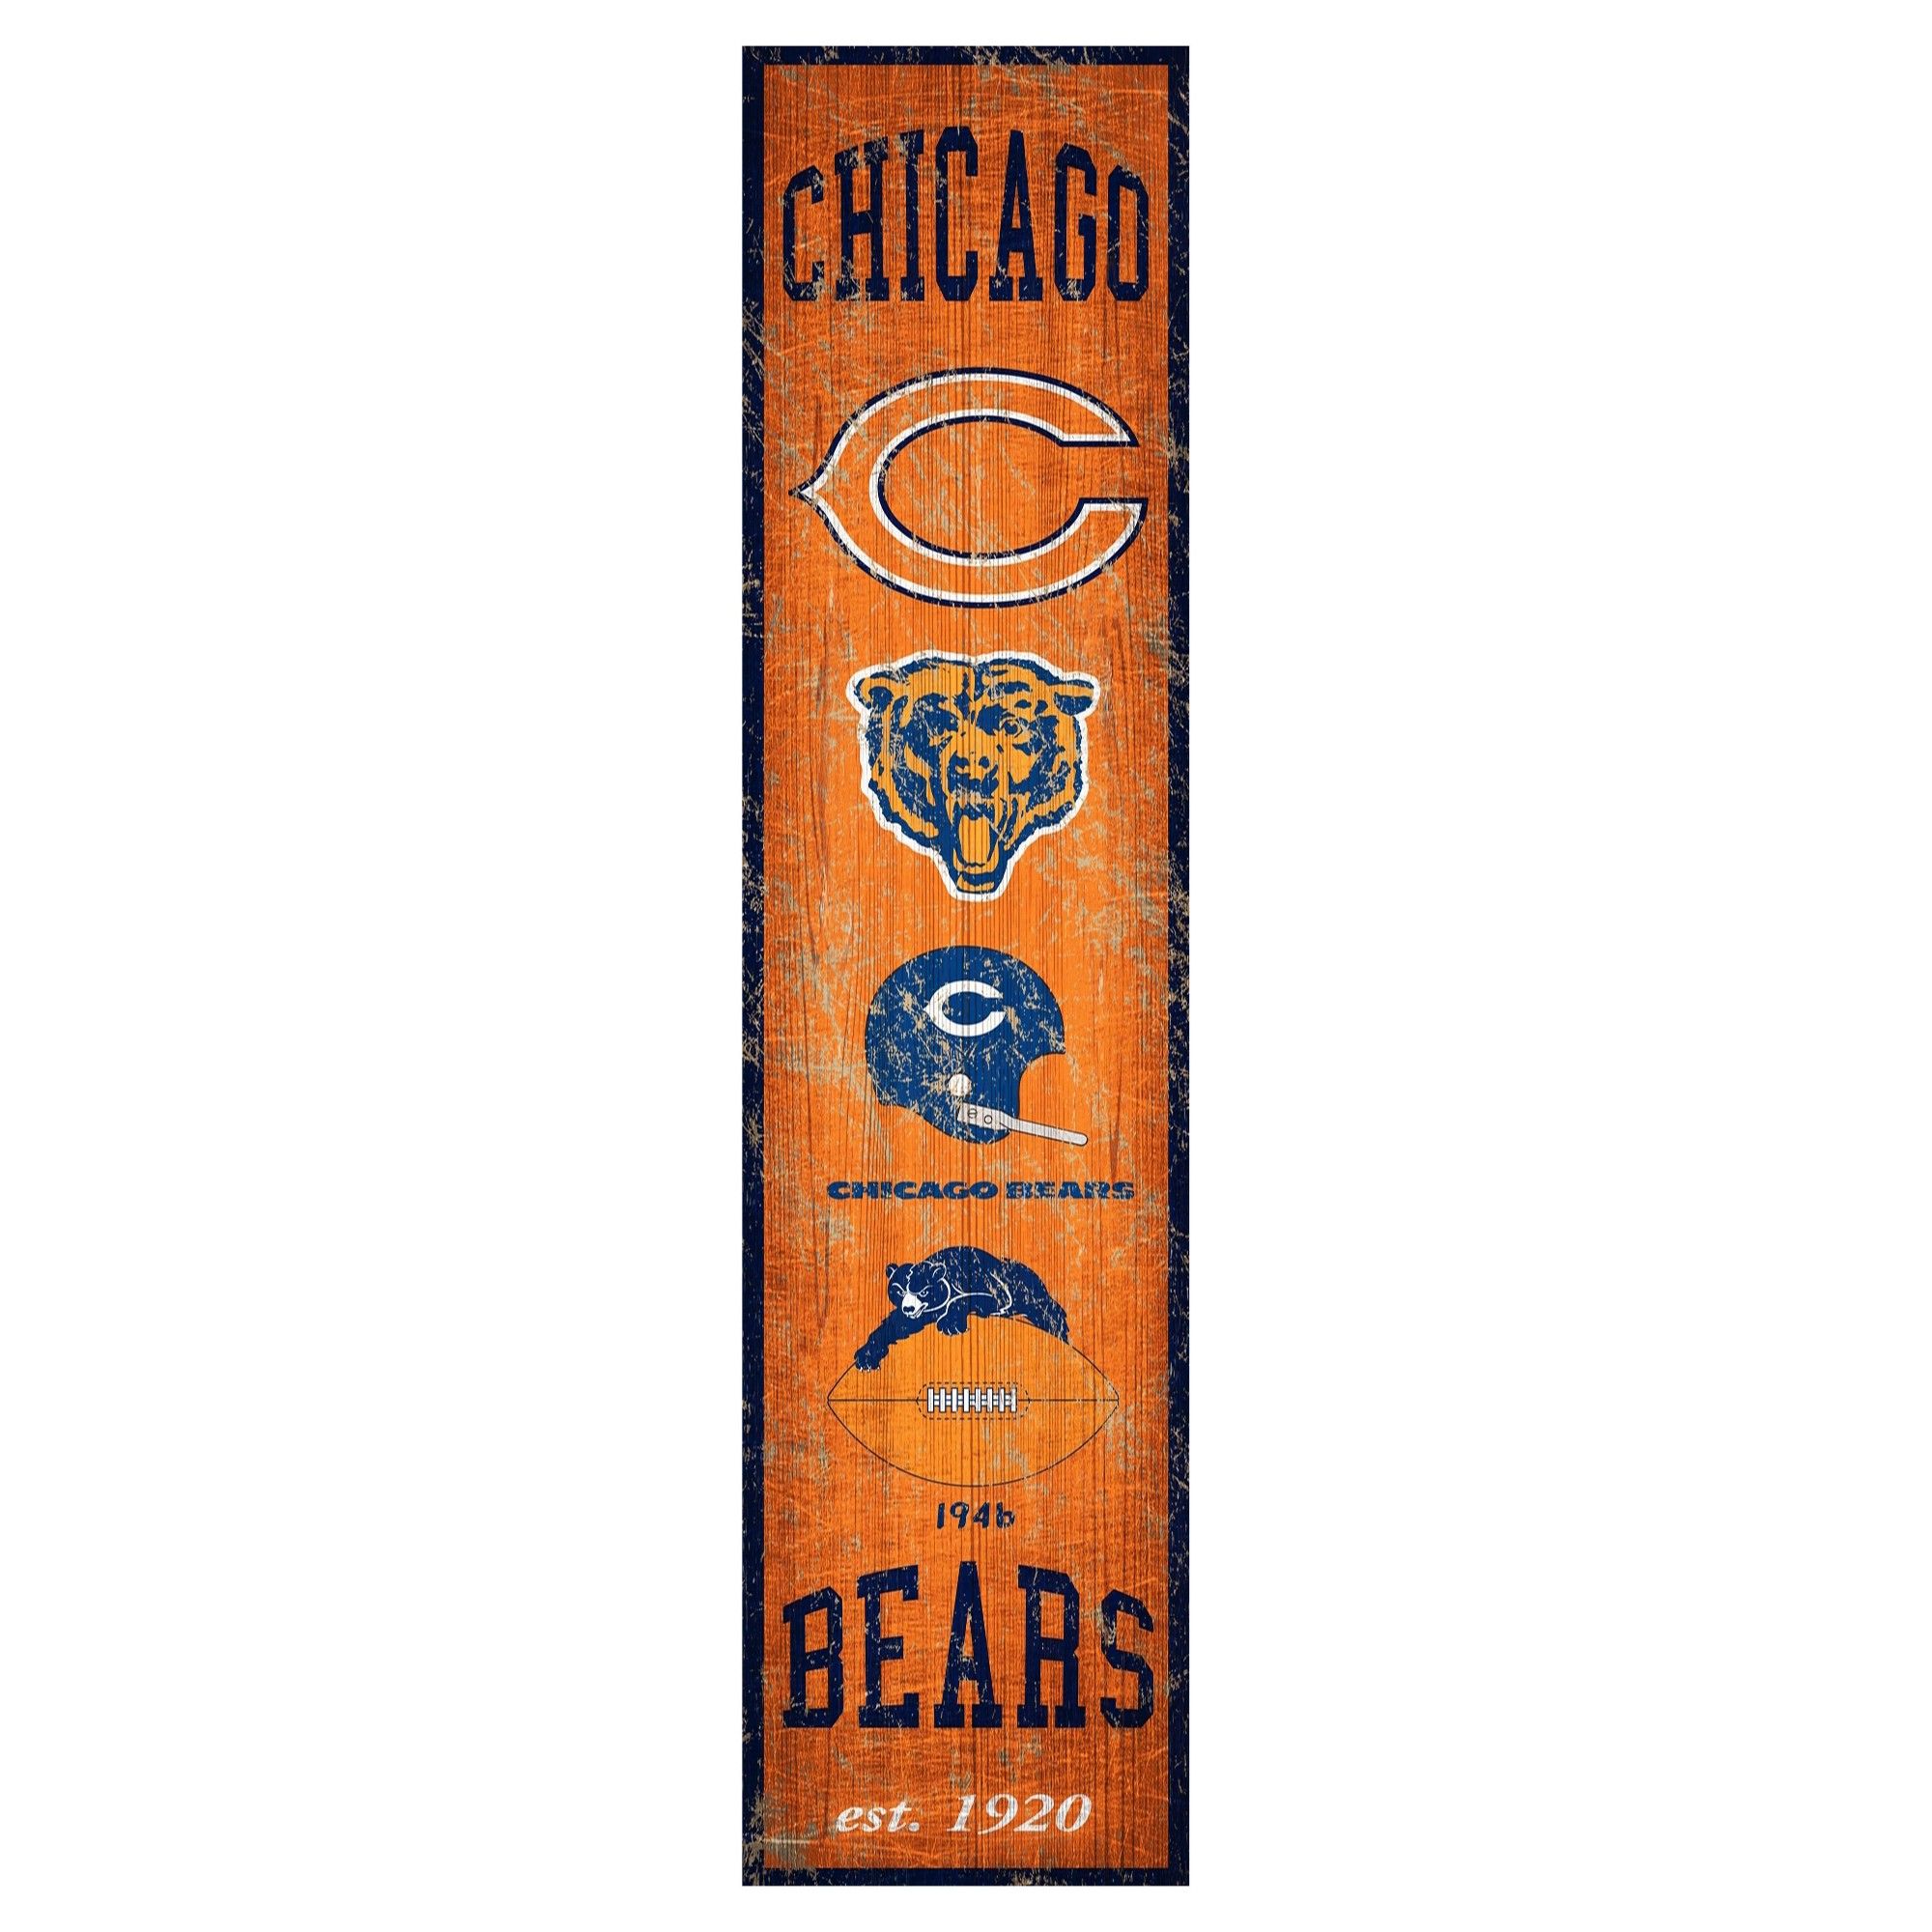 Nfl chicago bears.